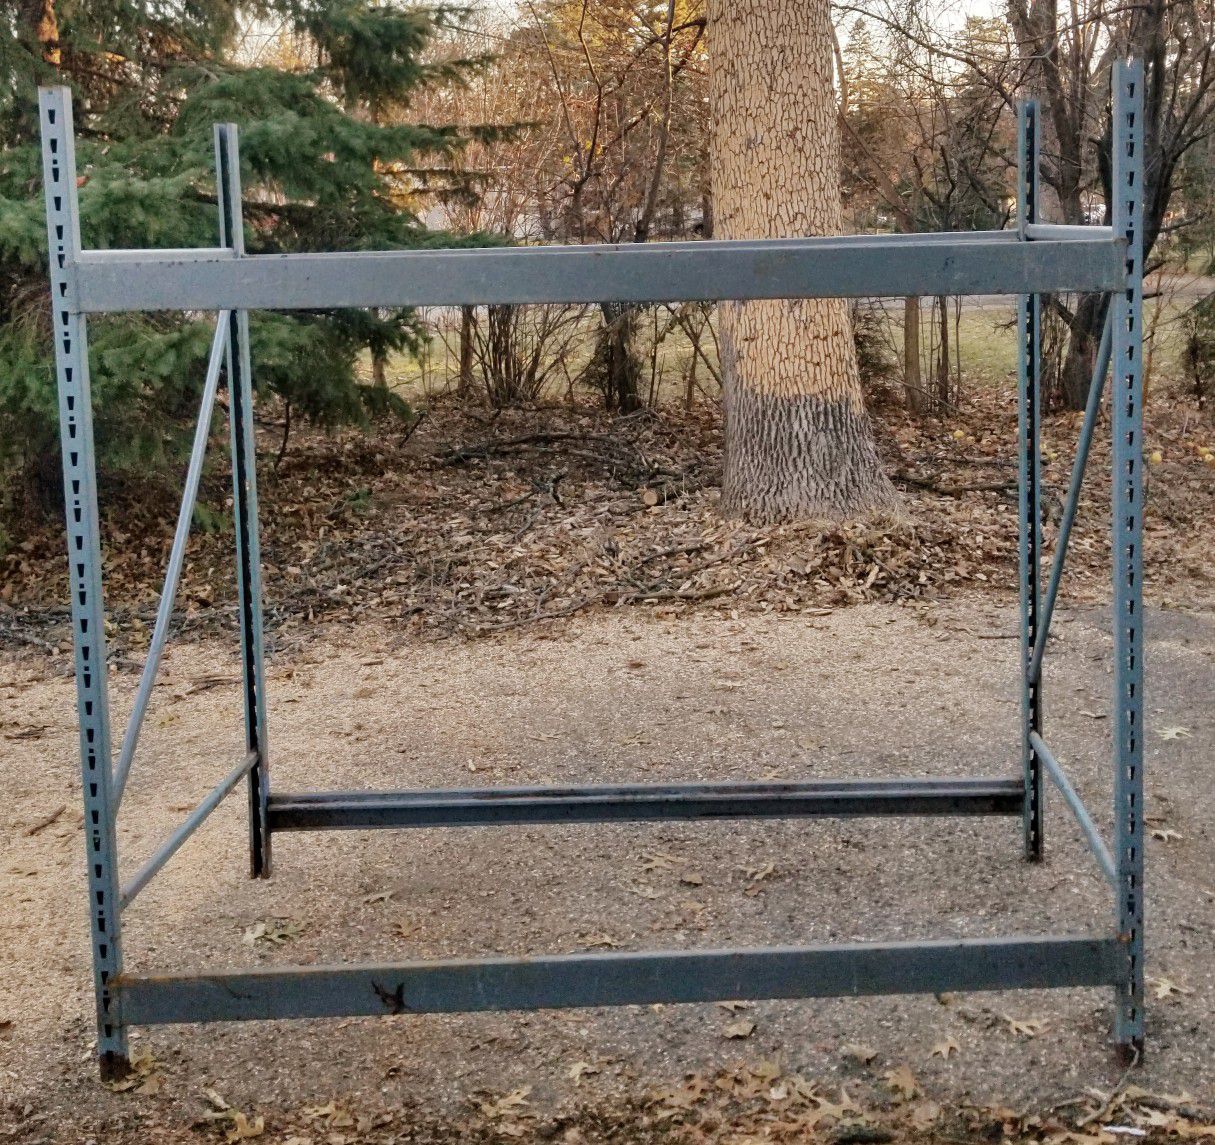 Sturdy metal rack